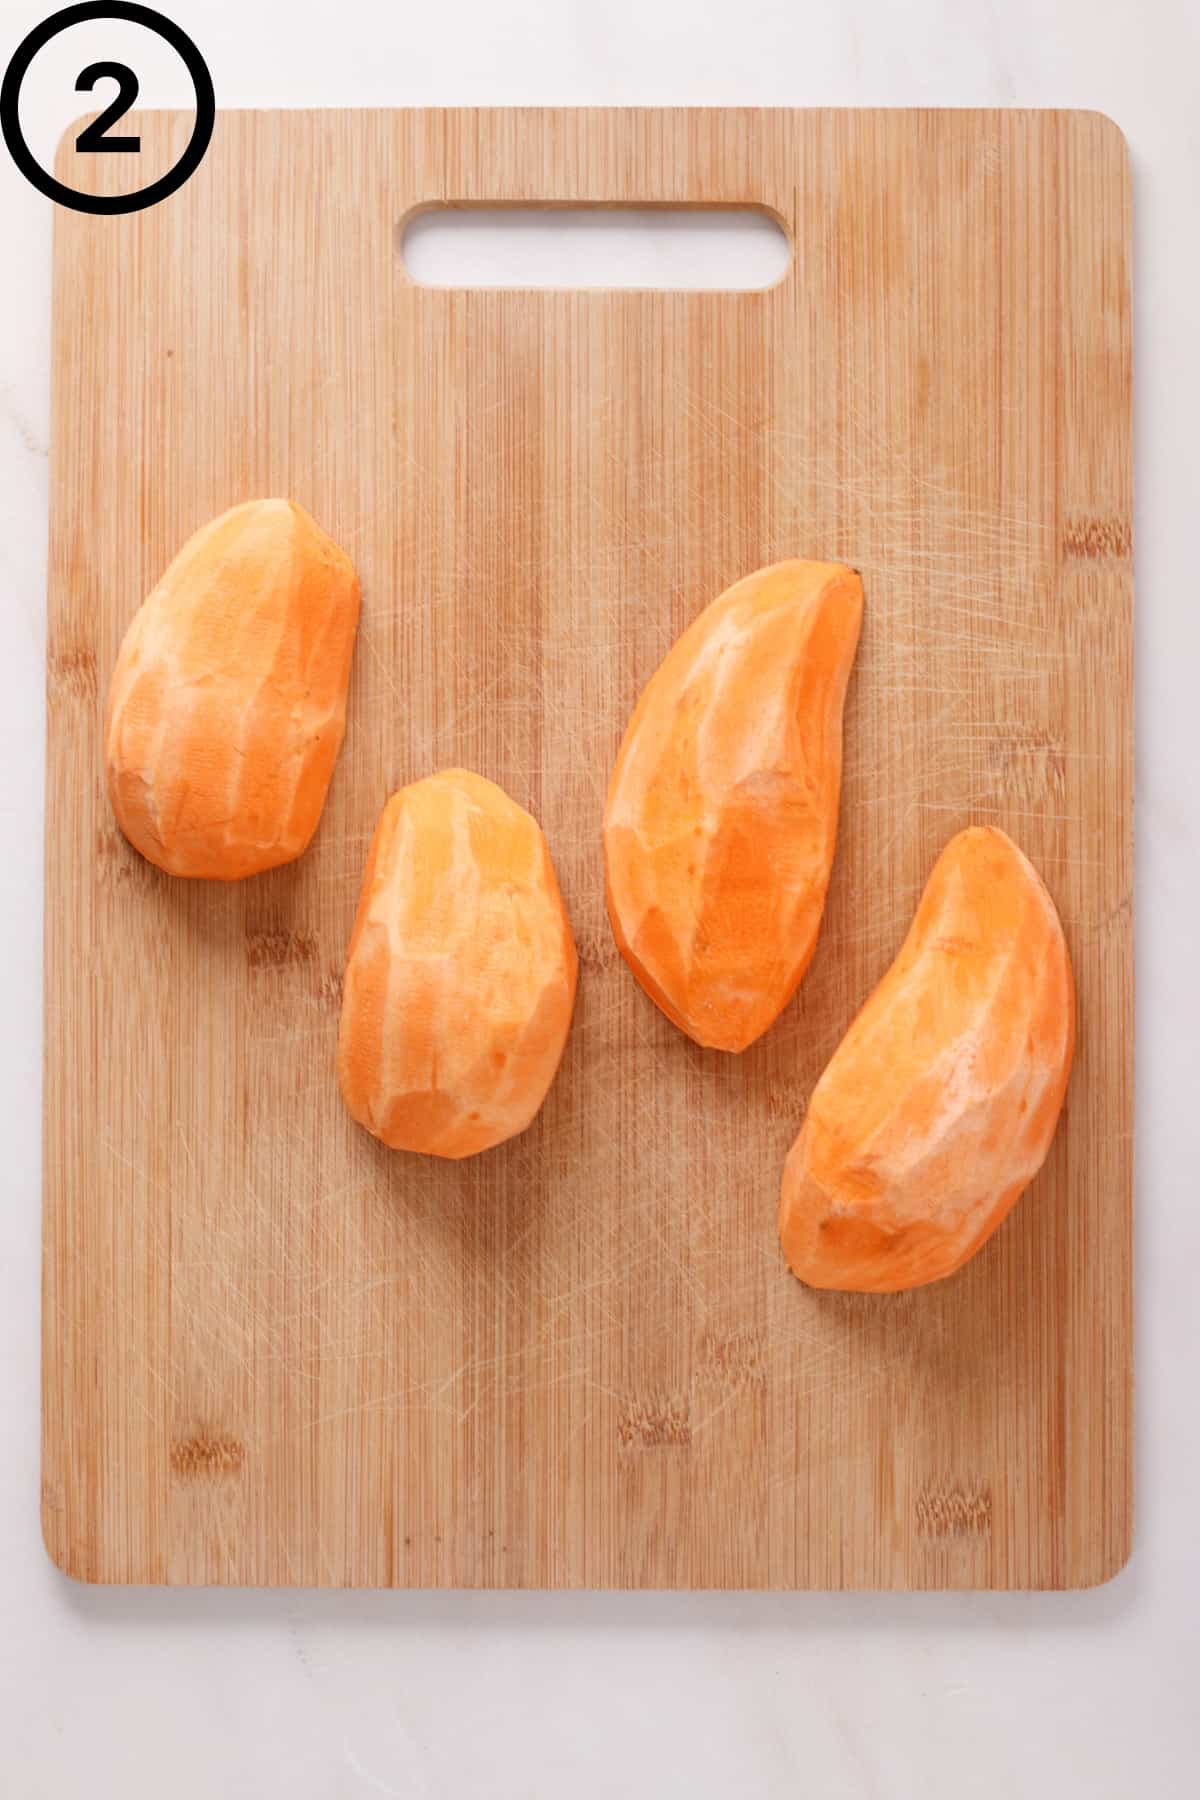 Peeled sweet potatoes sliced lengthwise.